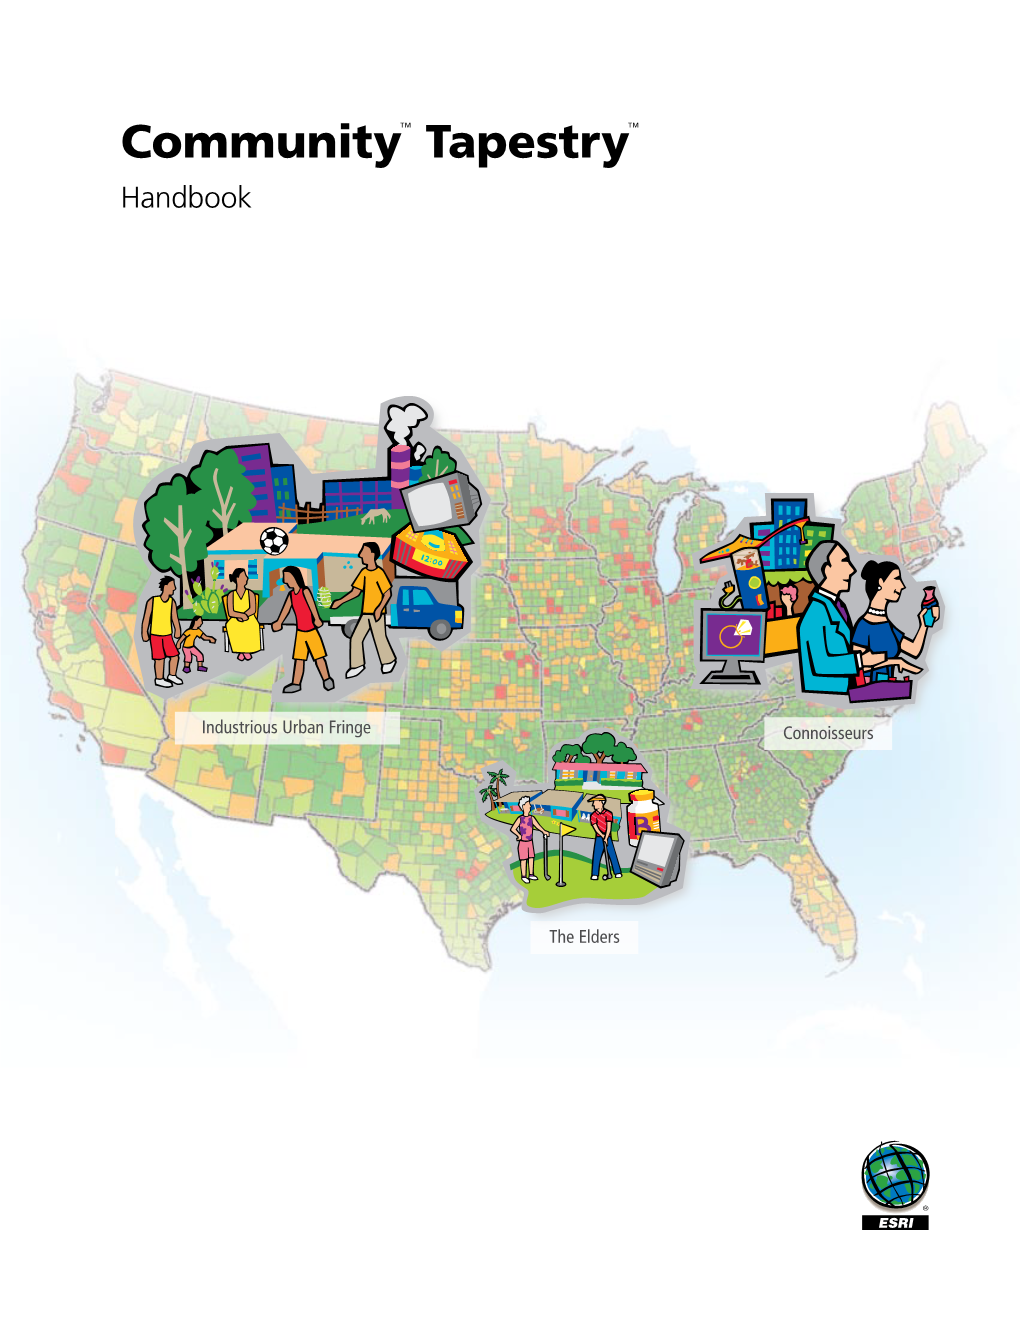 Community Tapestry Handbook